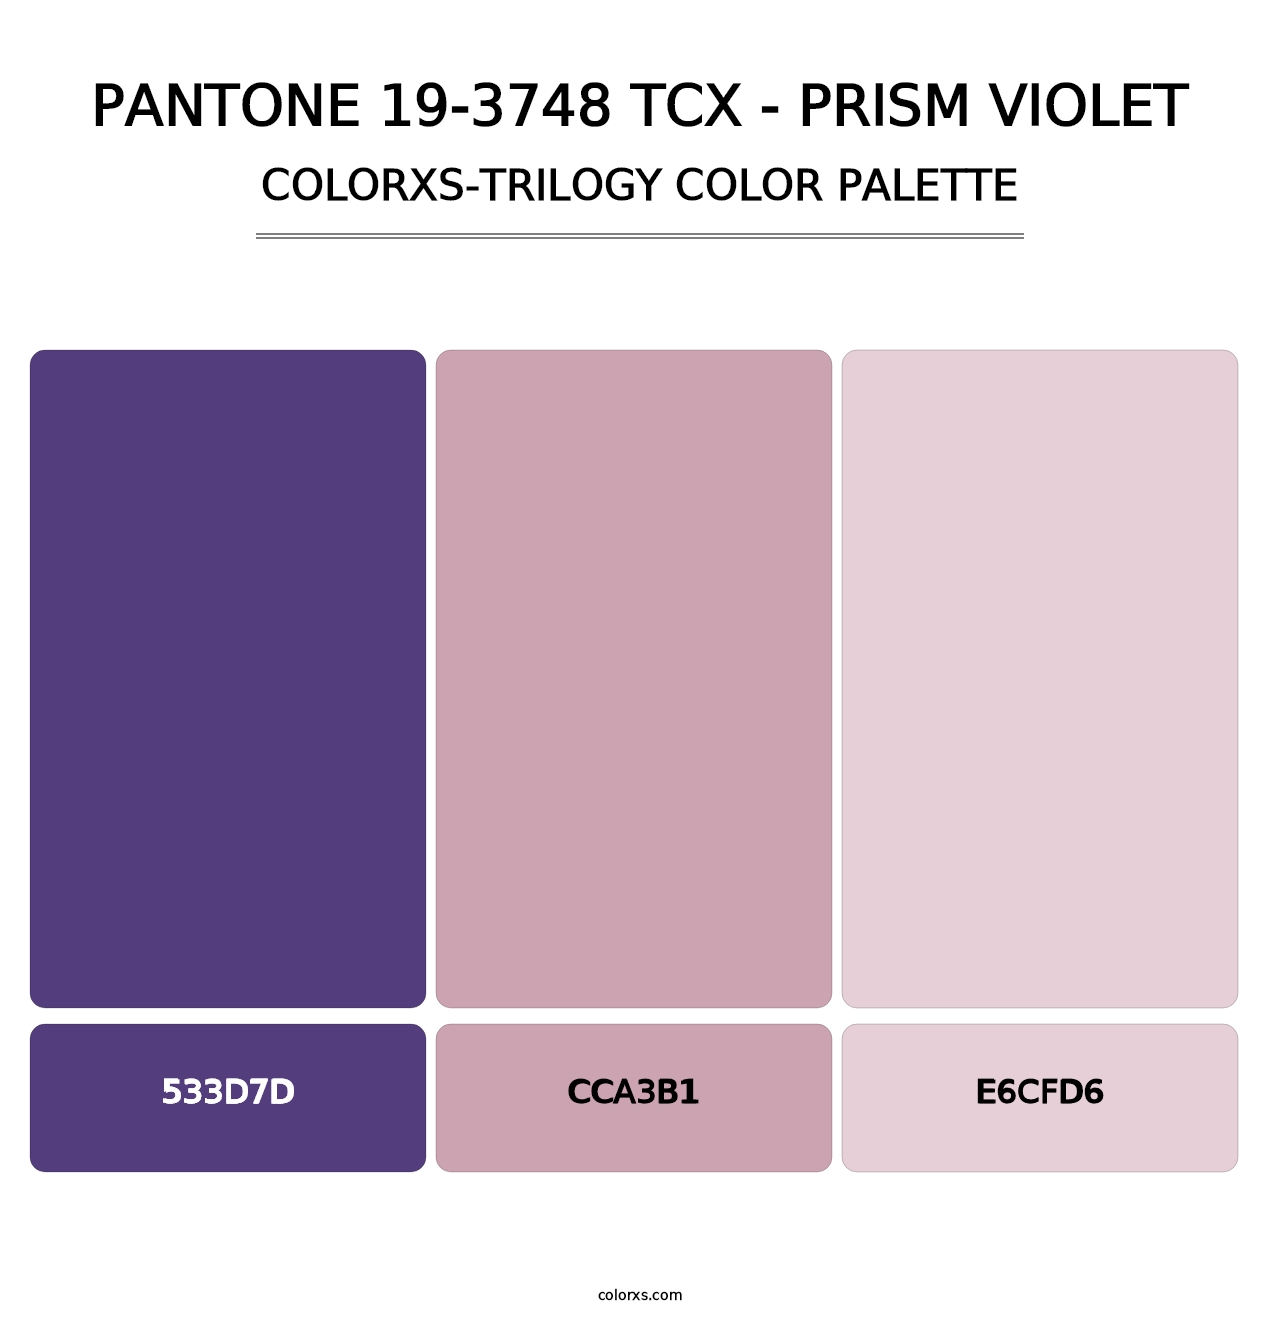 PANTONE 19-3748 TCX - Prism Violet - Colorxs Trilogy Palette